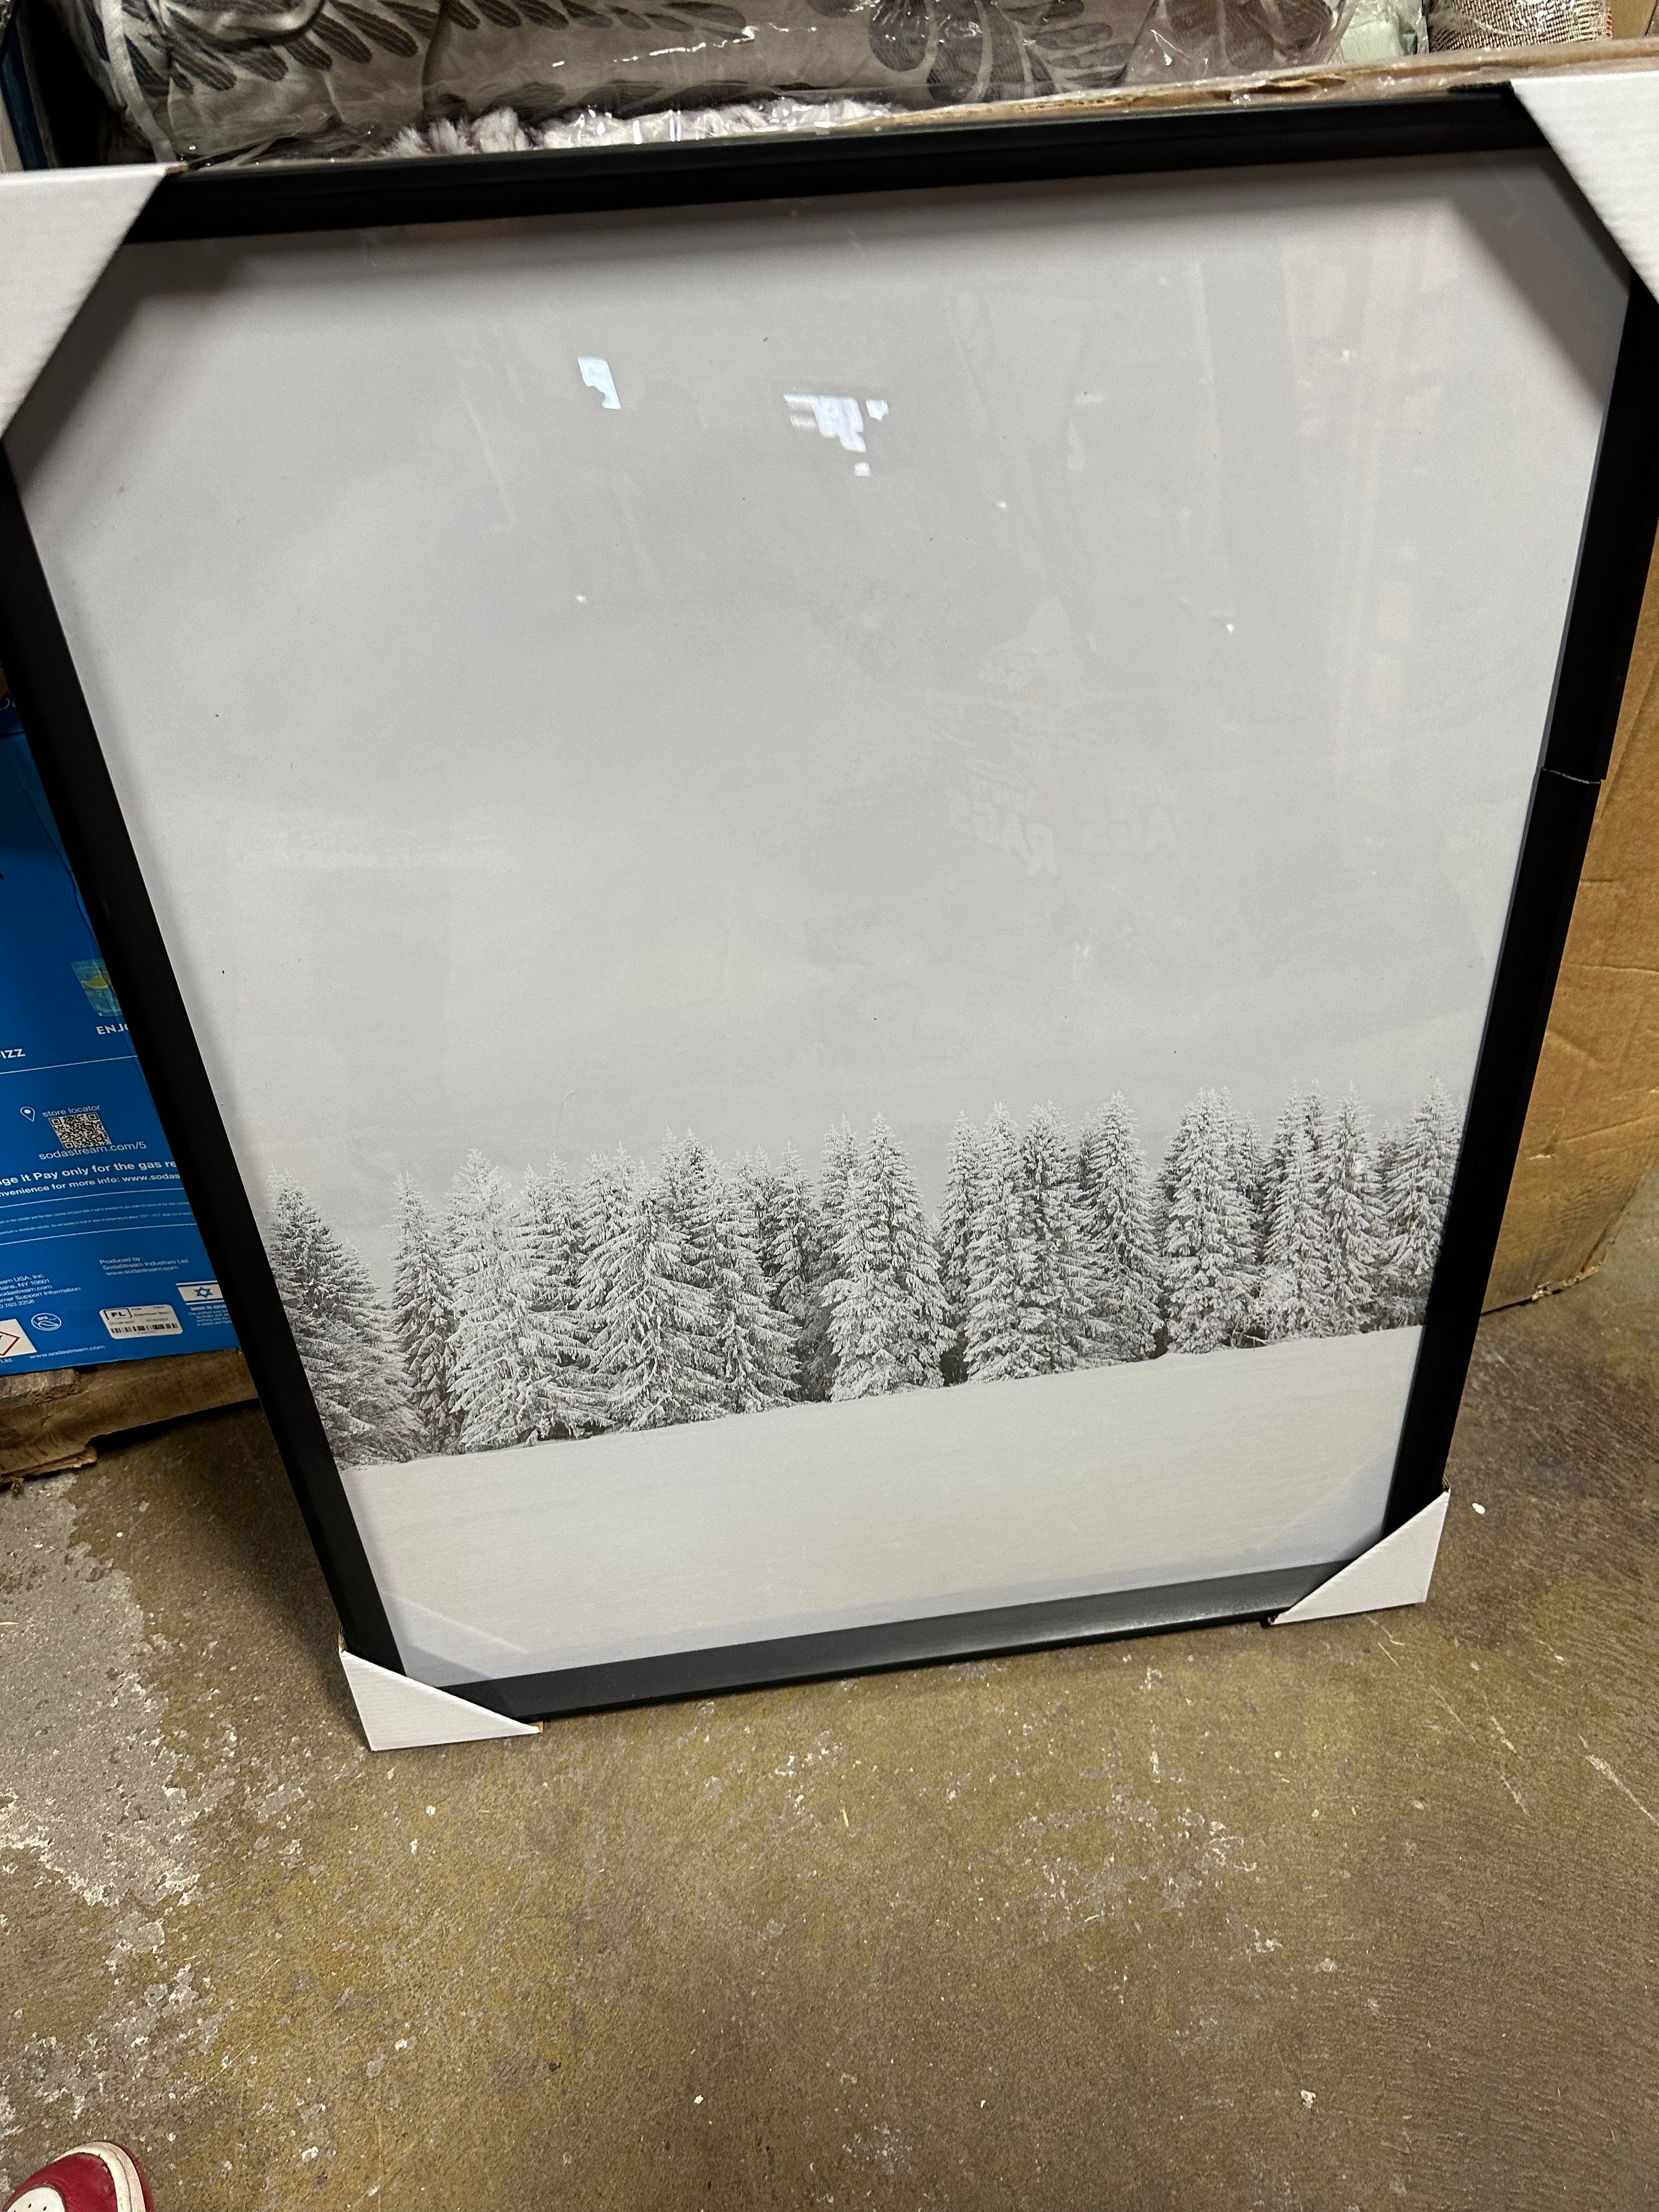 Winter Trees Framed Wall Art